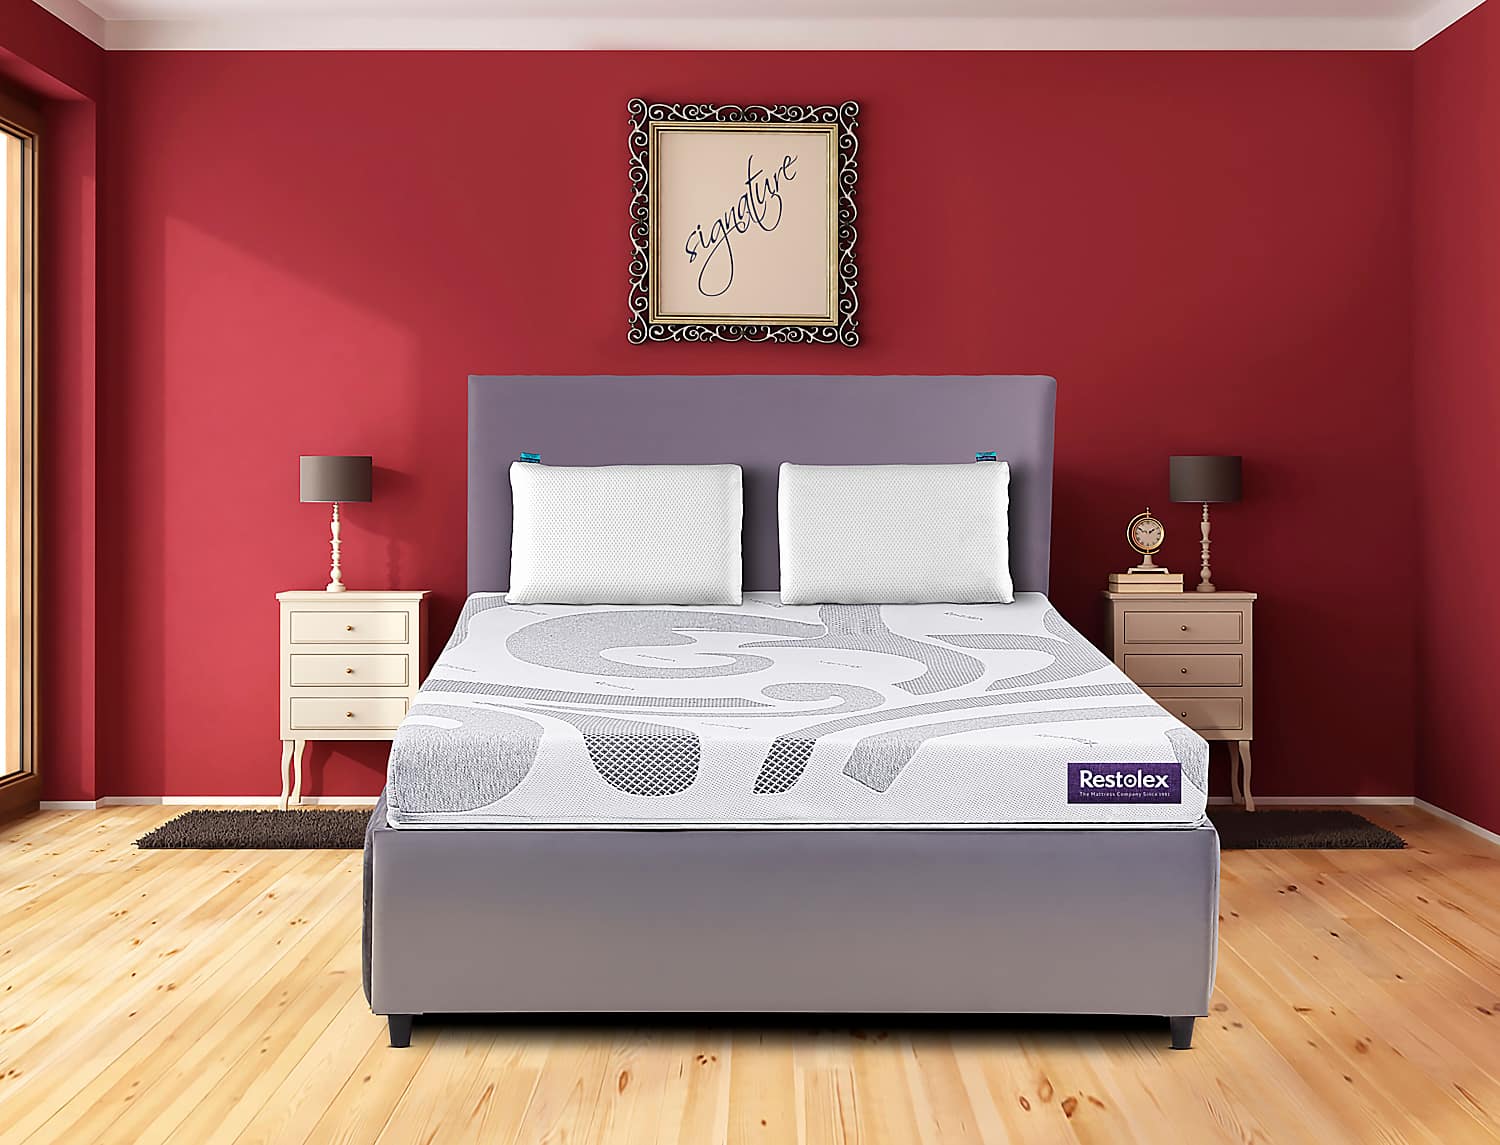 restolex mattress queen size